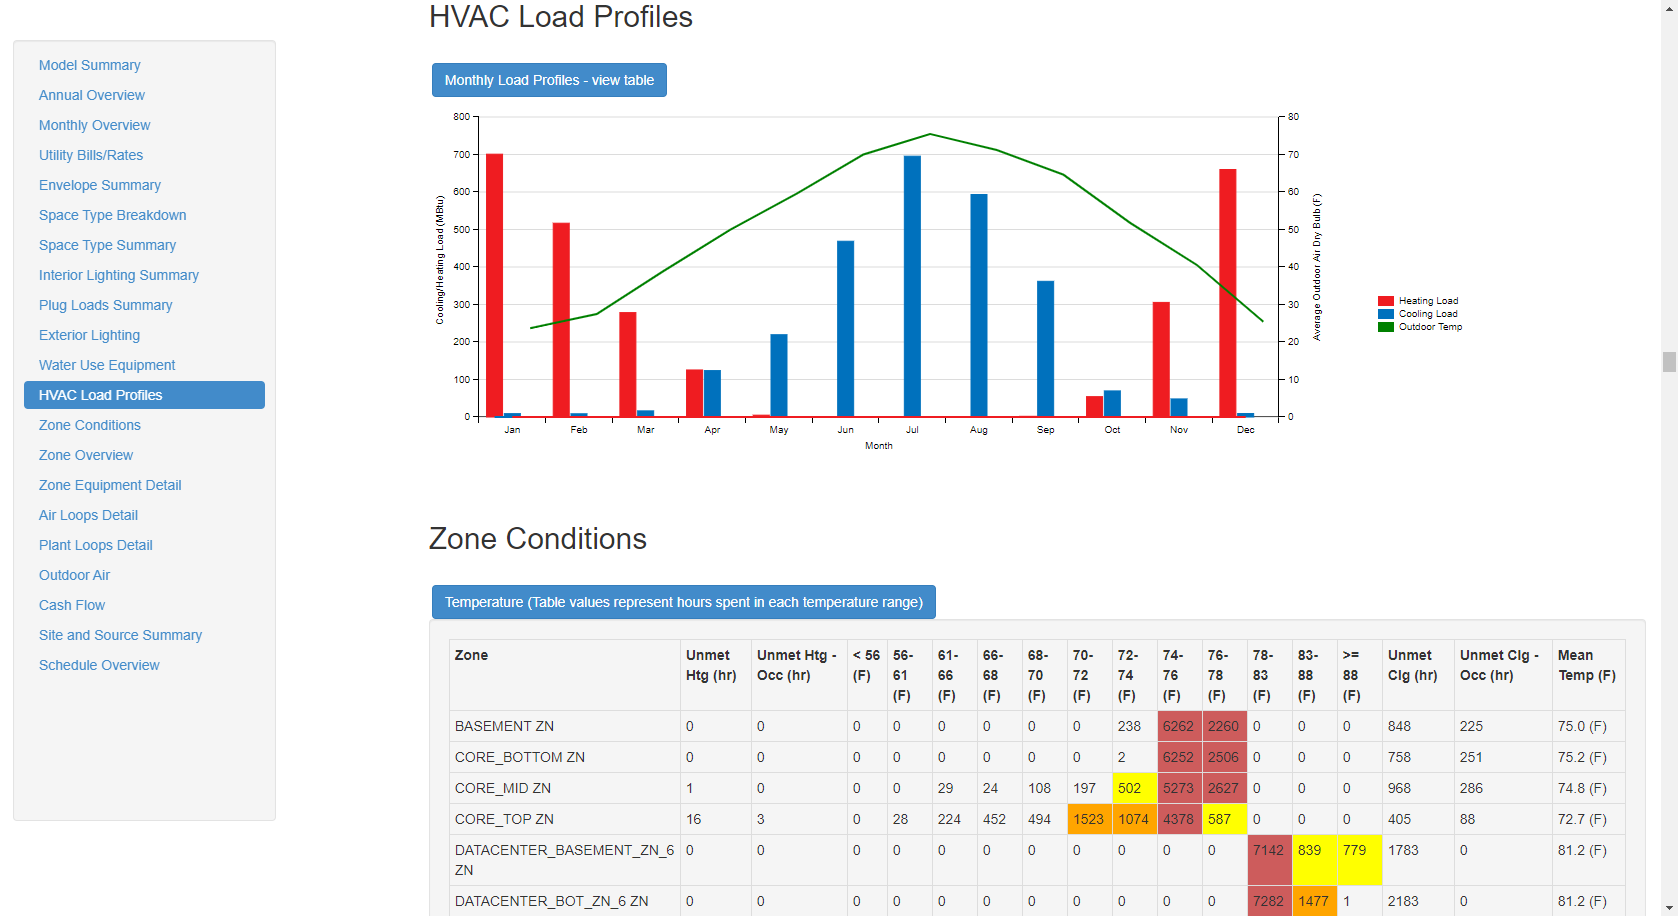 HVAC Load Profiles chart